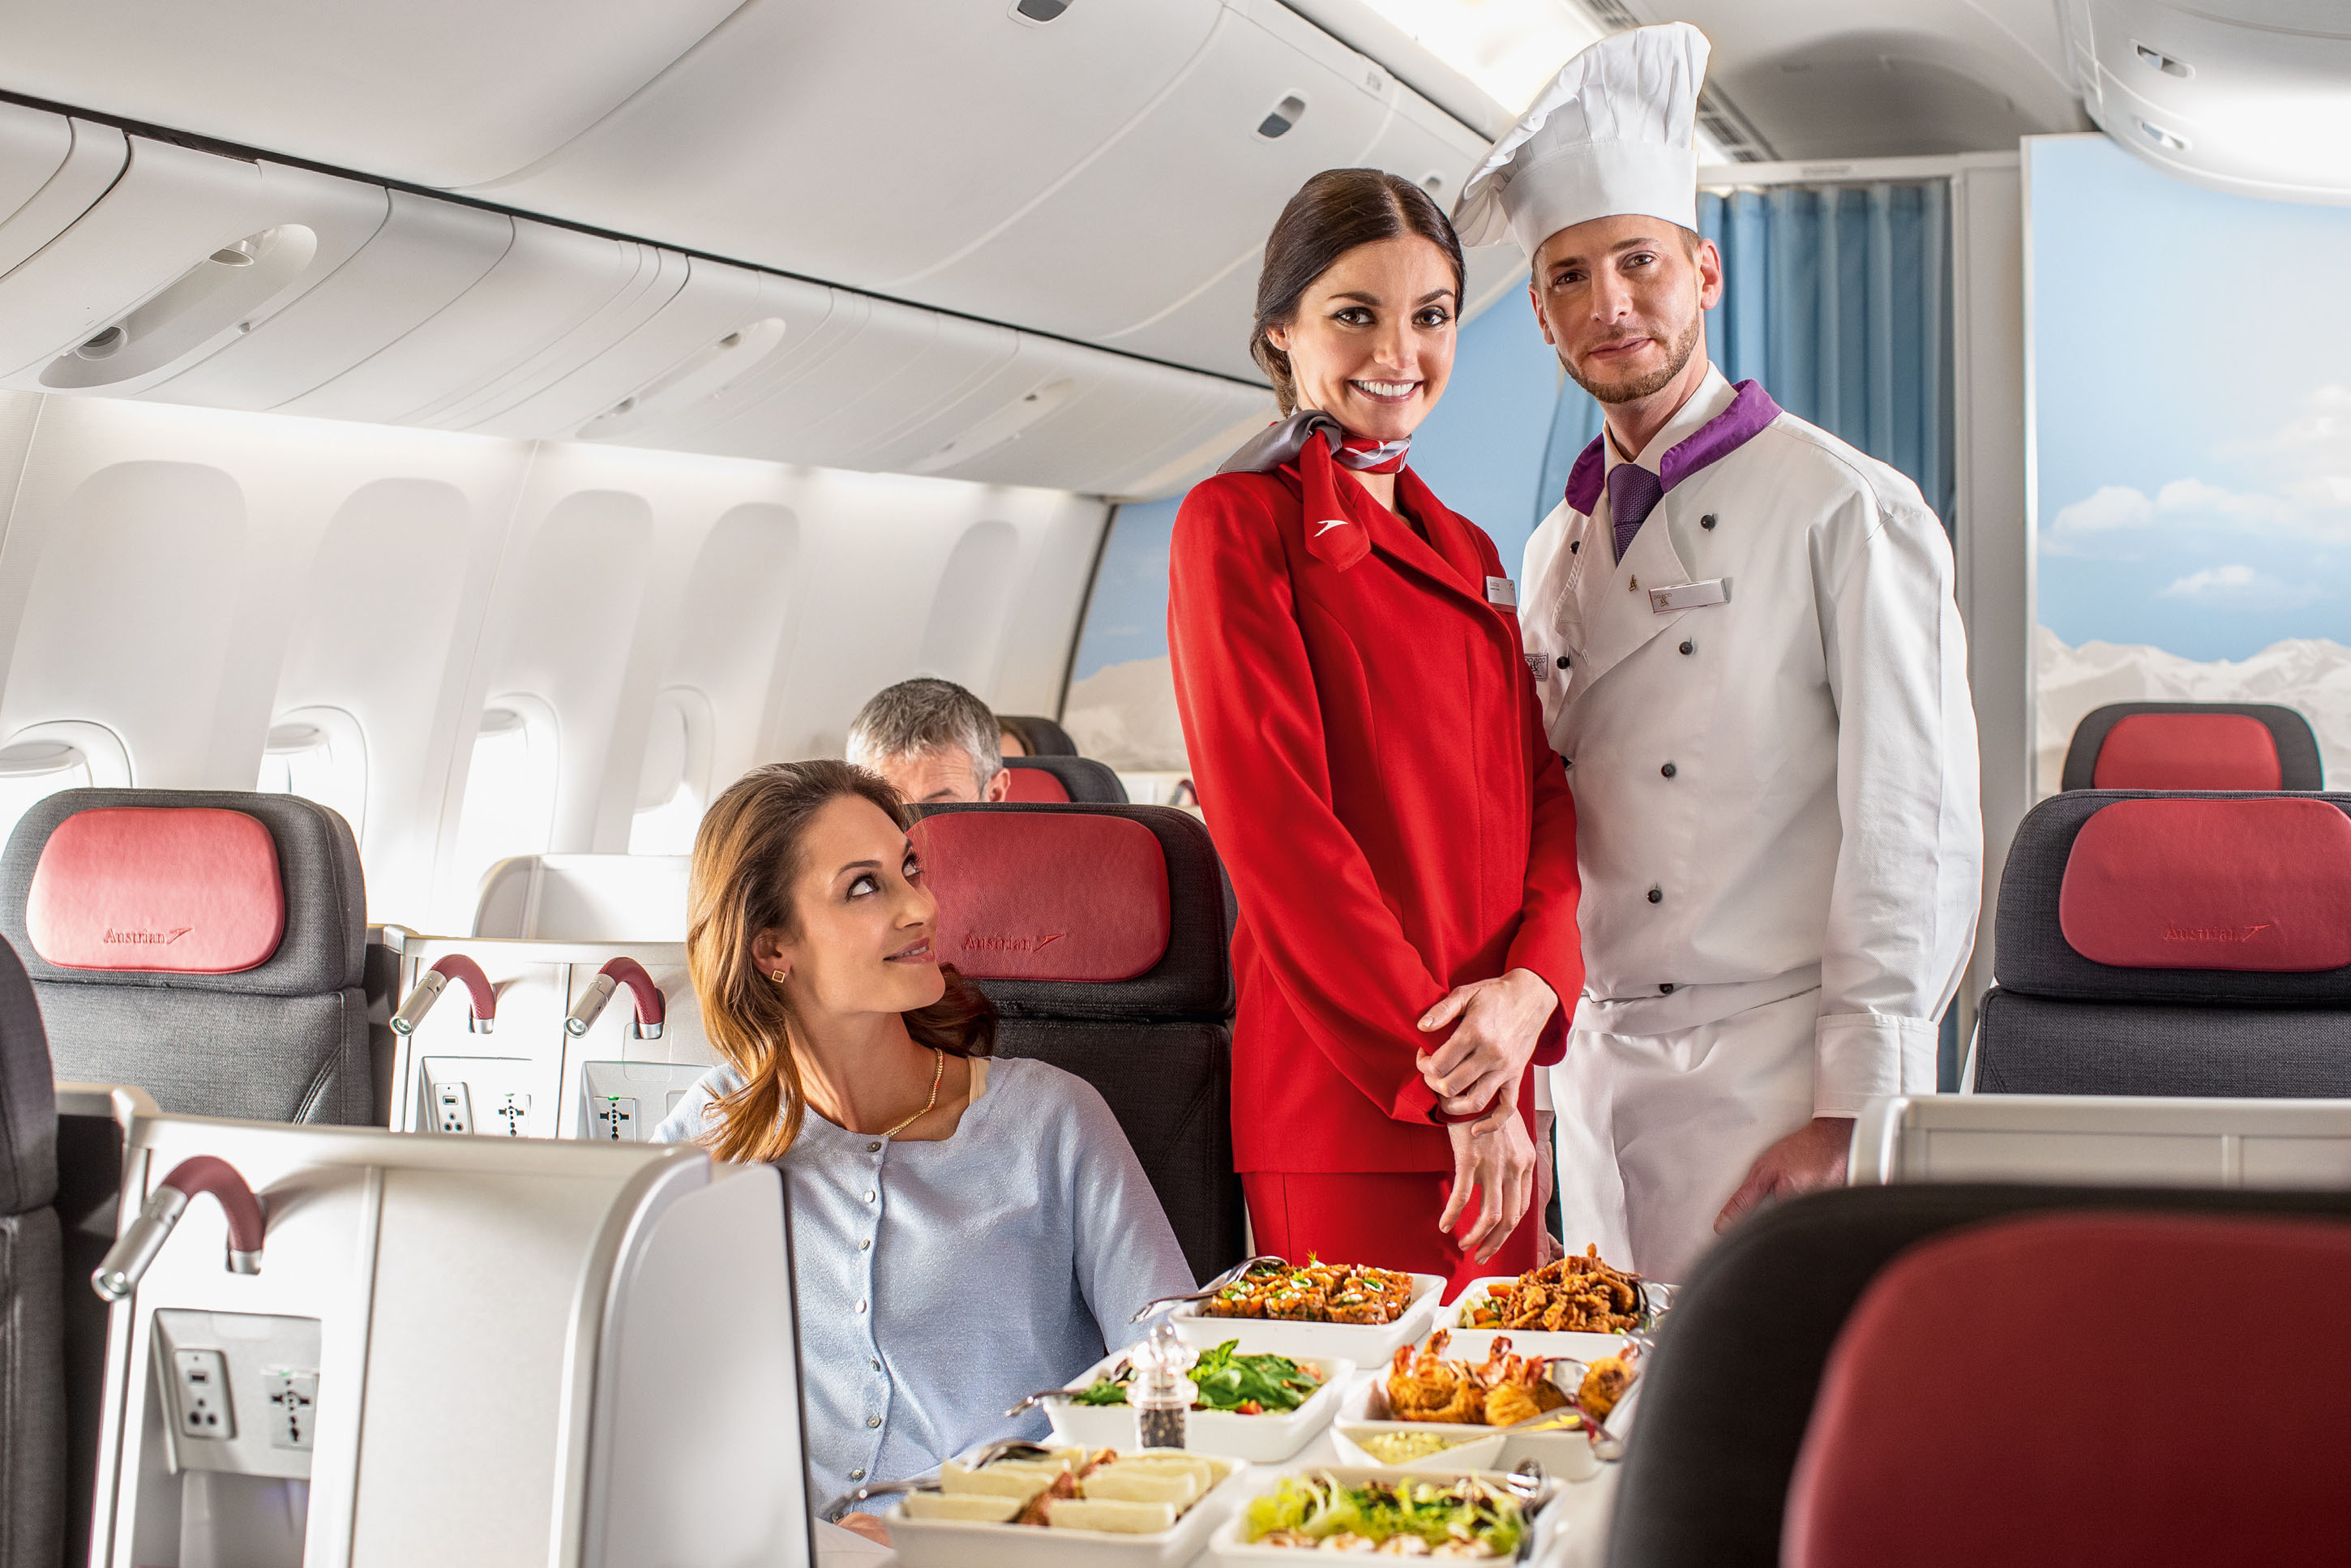 Обед в самолете. Еда в самолете. Стюардесса с едой. Еда на борту. Борт самолета.